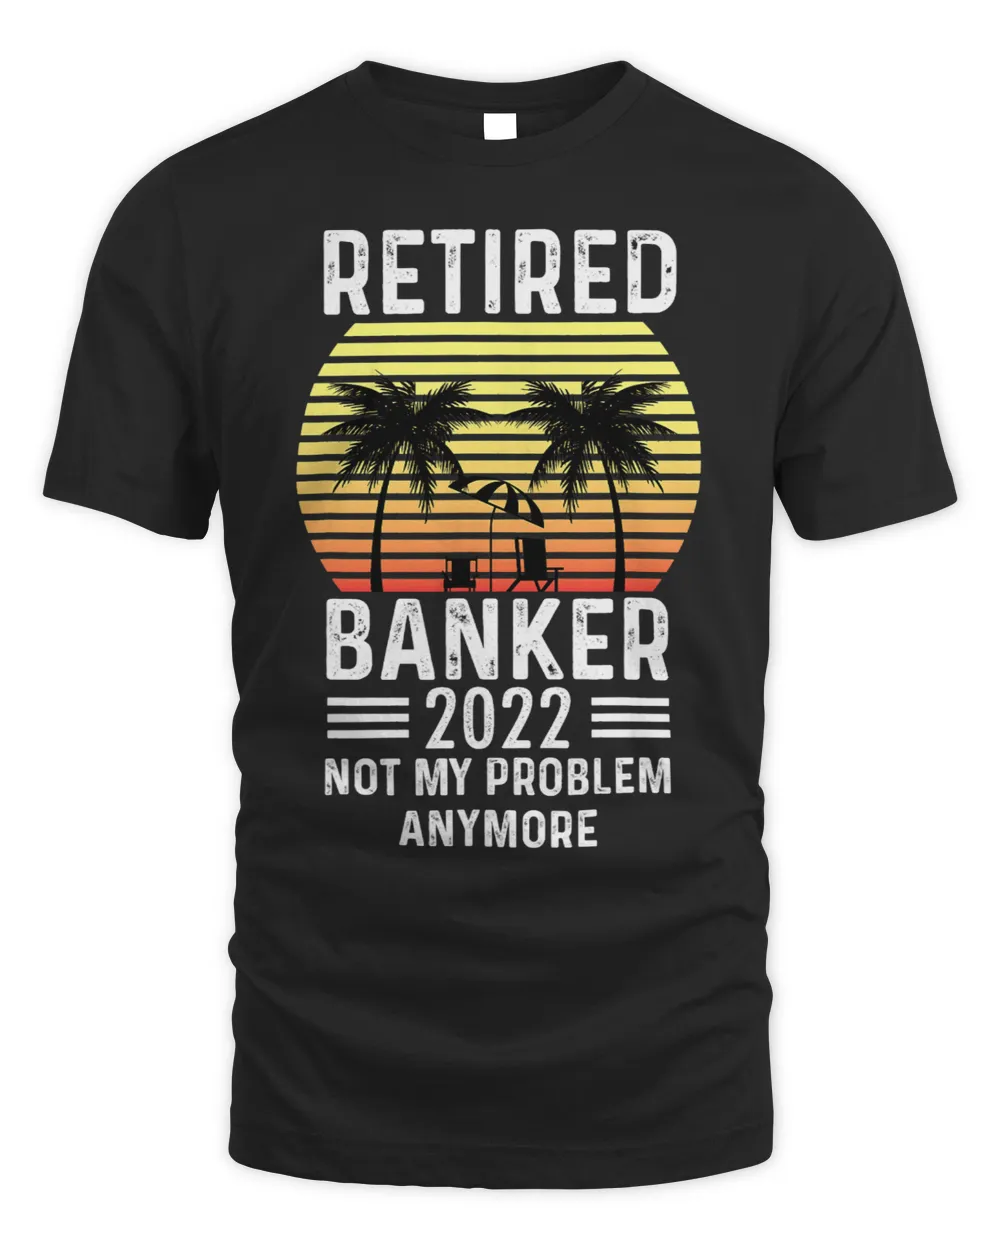 Banker Gifts Retired banker . former banker